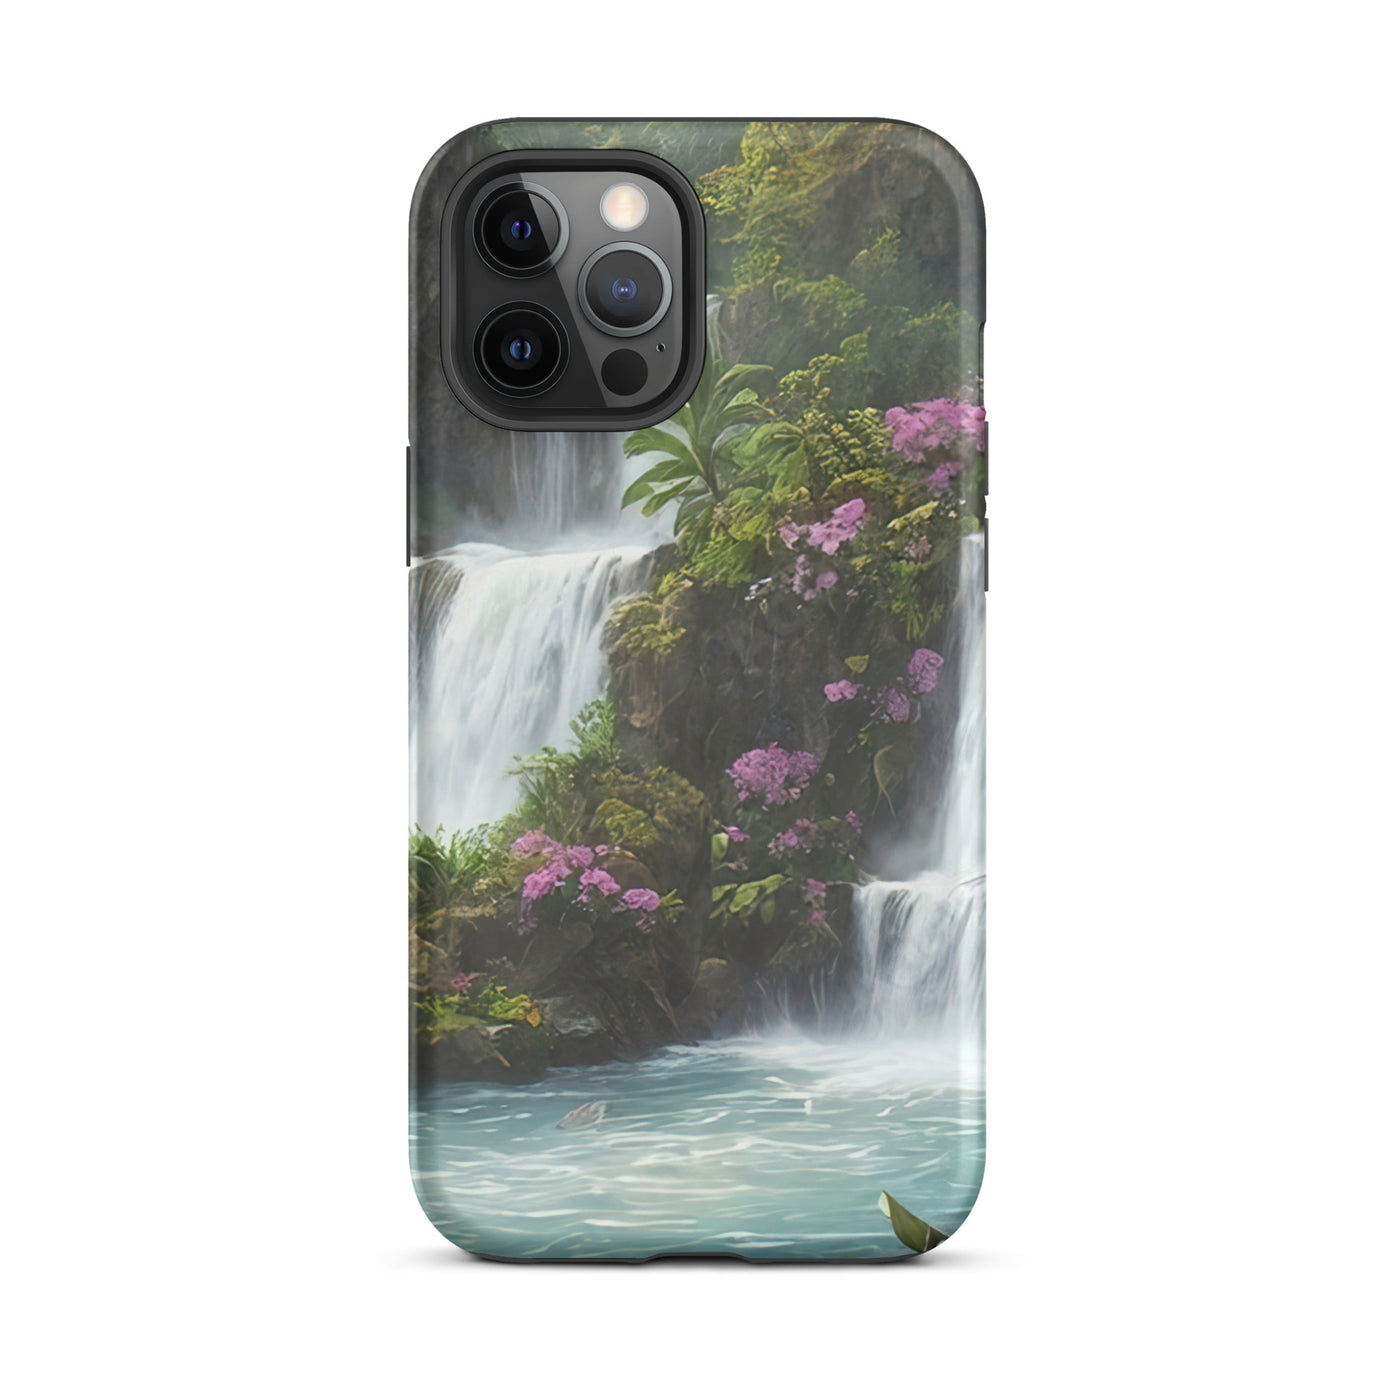 Wasserfall im Wald und Blumen - Schöne Malerei - iPhone Schutzhülle (robust) camping xxx iPhone 12 Pro Max